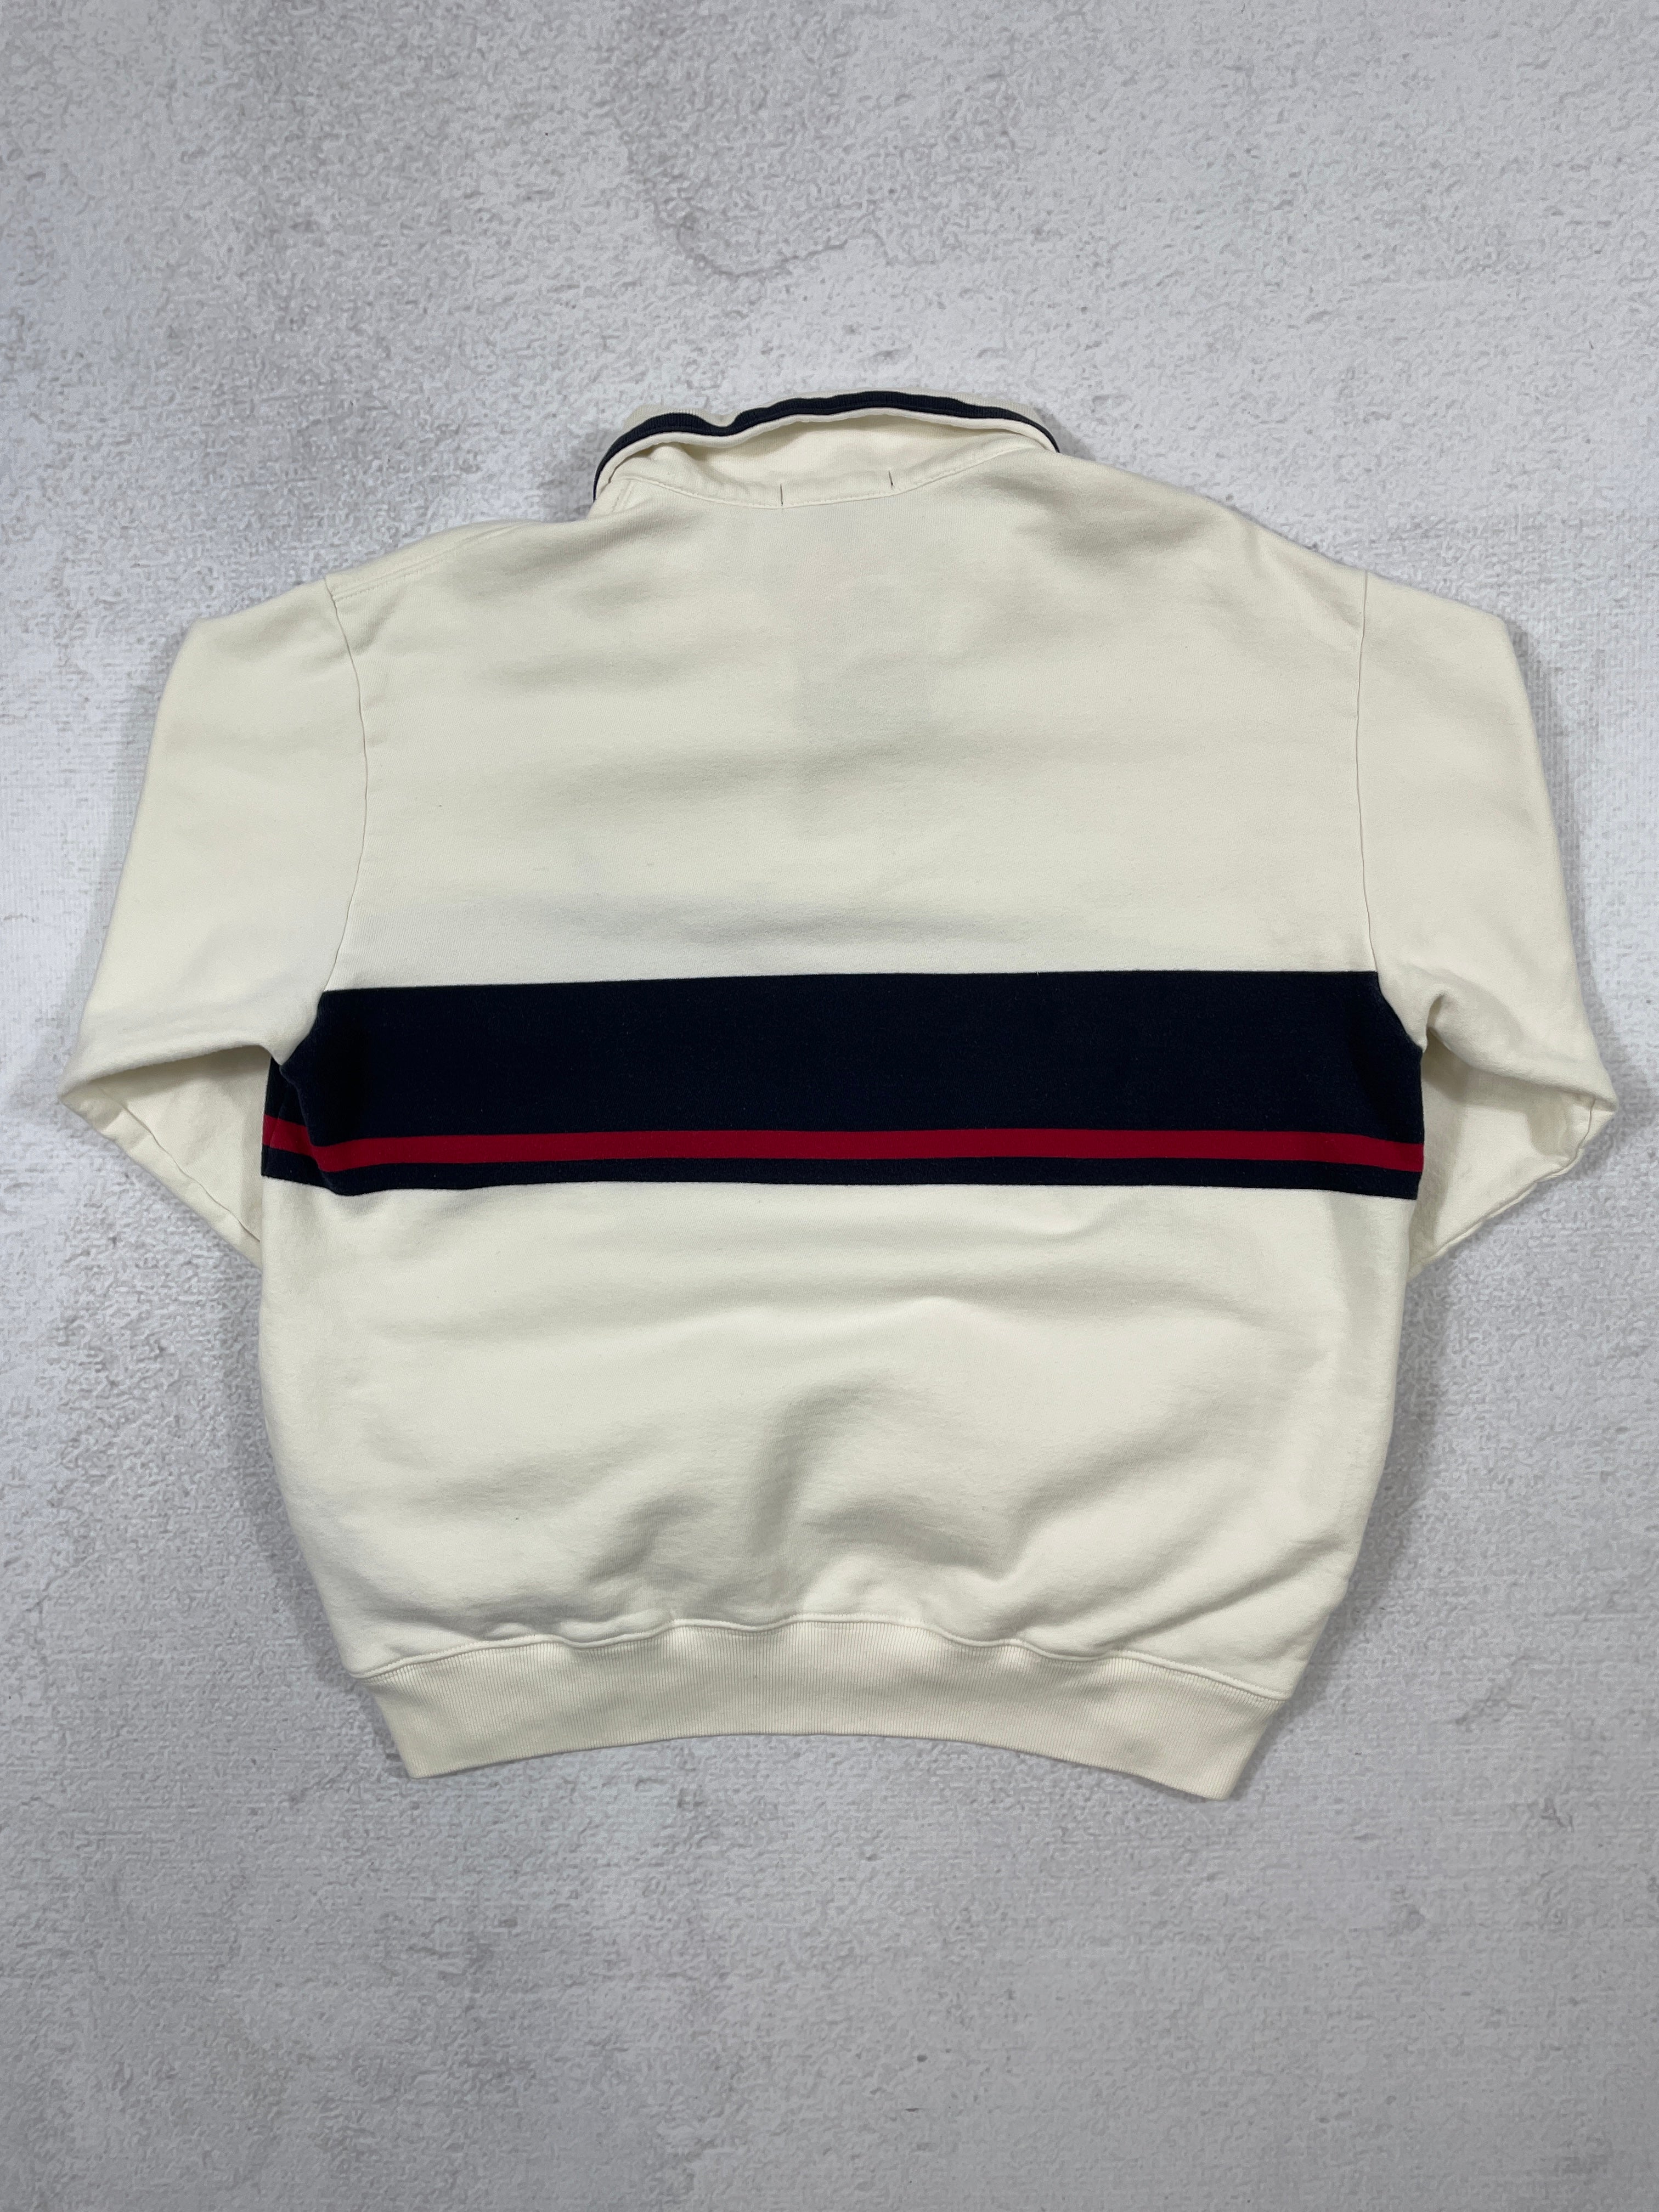 Vintage Nautica 1/4 Zip Sweatshirt - Men's Small